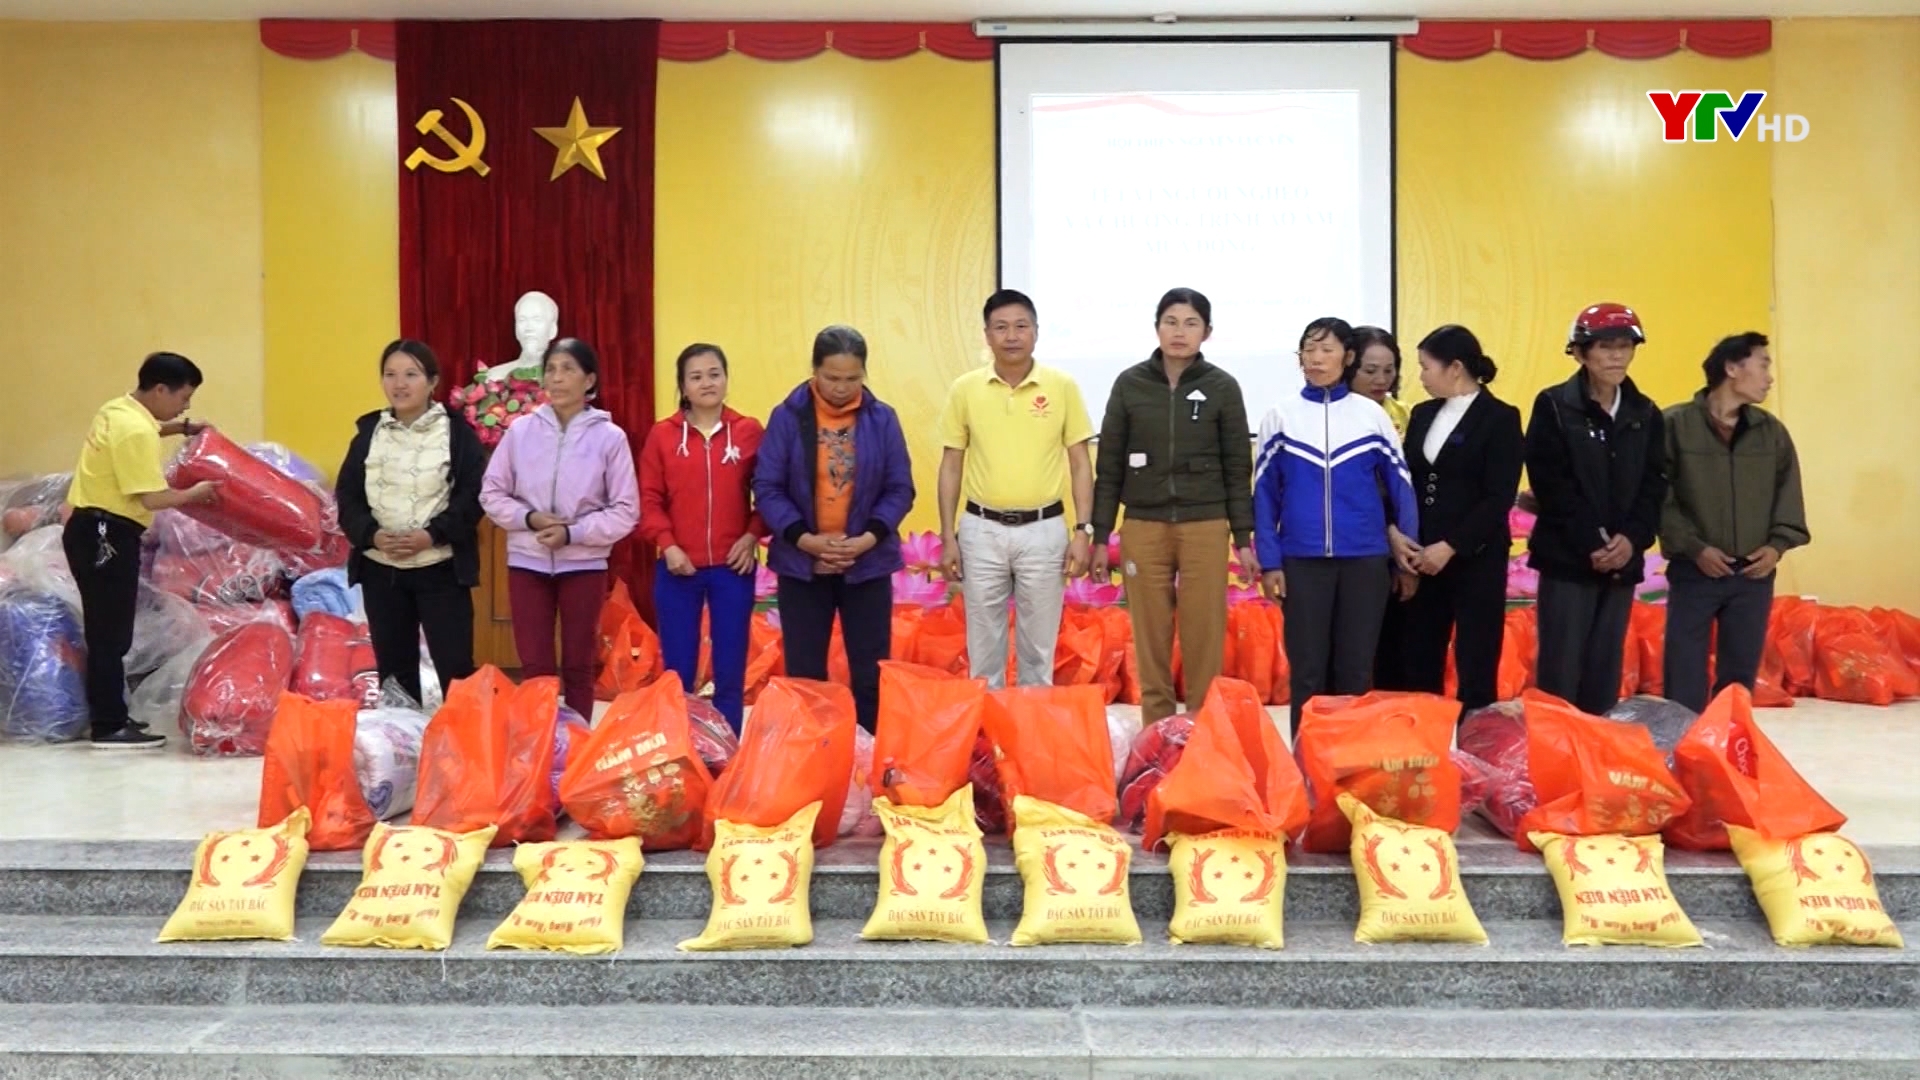 Huyện Lục Yên với chương trình “Tết vì người nghèo”